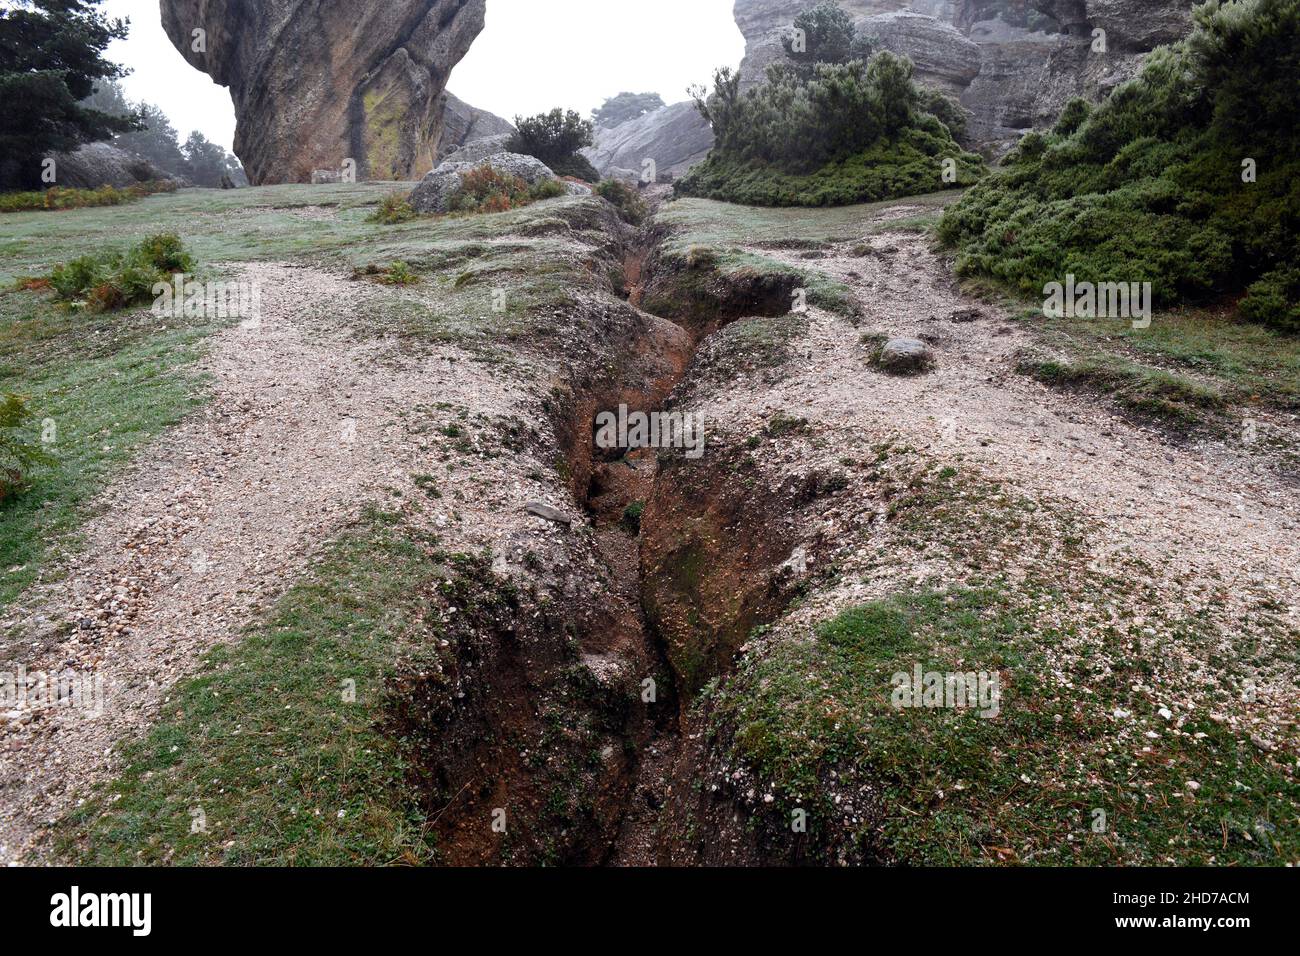 Soil erosion (gully) by rain. Castroviejo, Duruelo de la Sierra, Soria, Castilla y Leon, Spain. Stock Photo